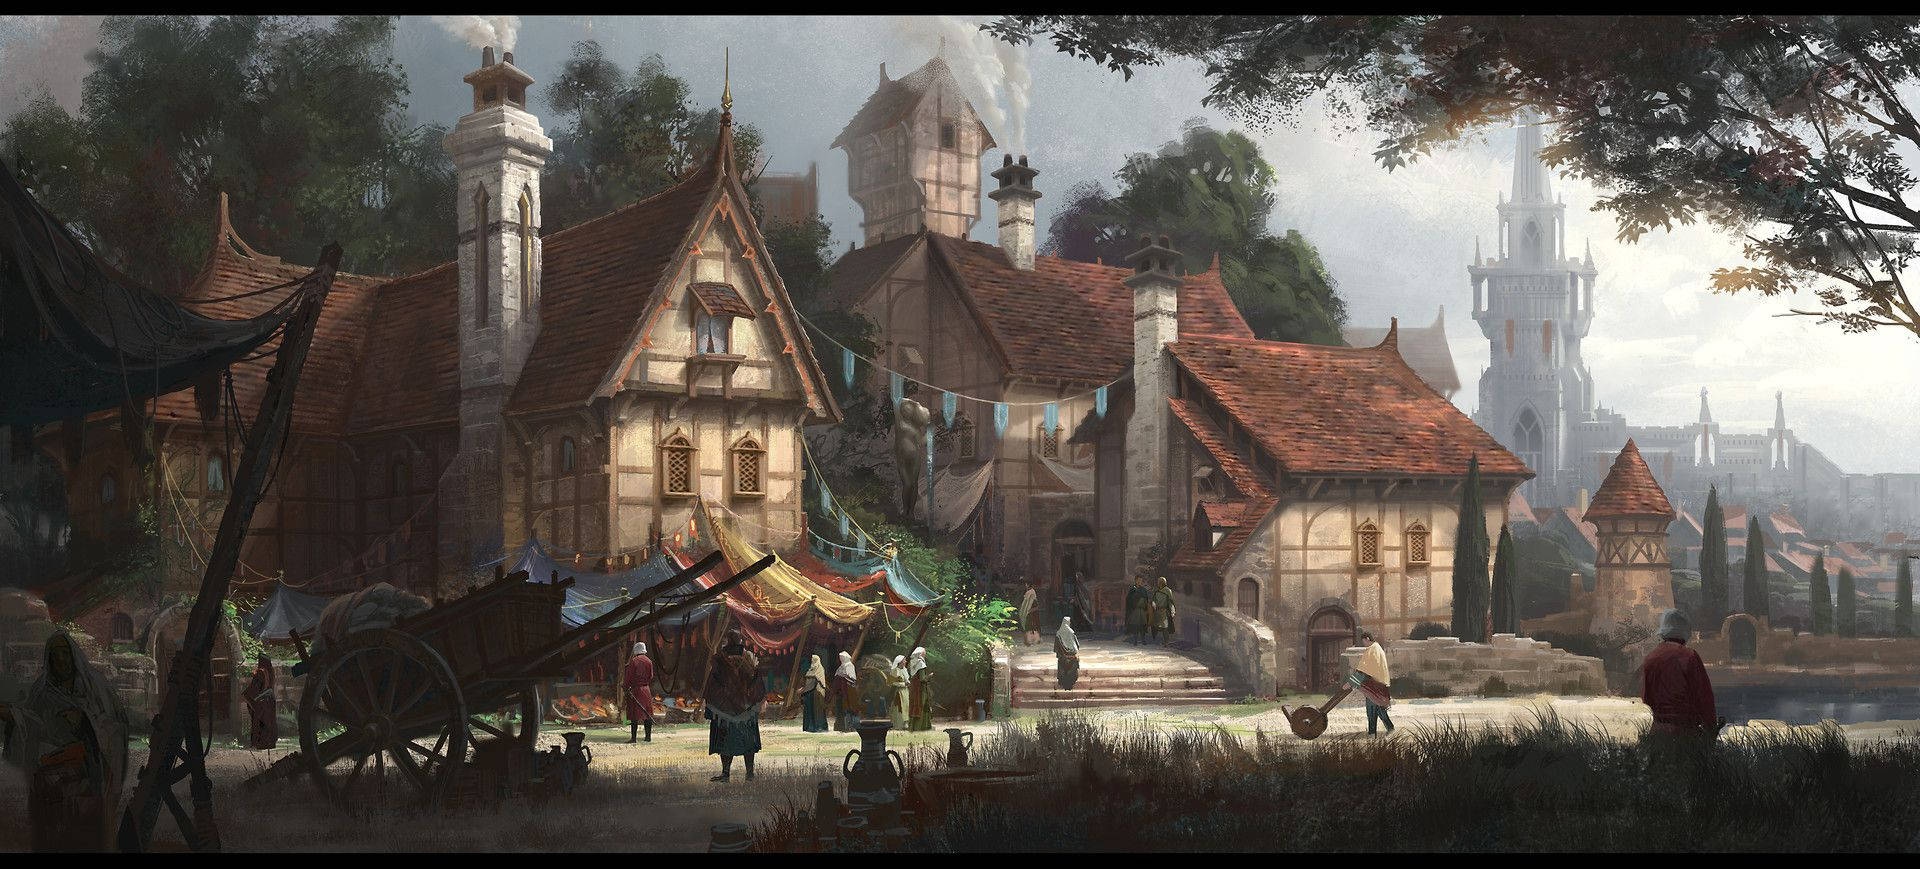 Medieval Fantasy Village Art